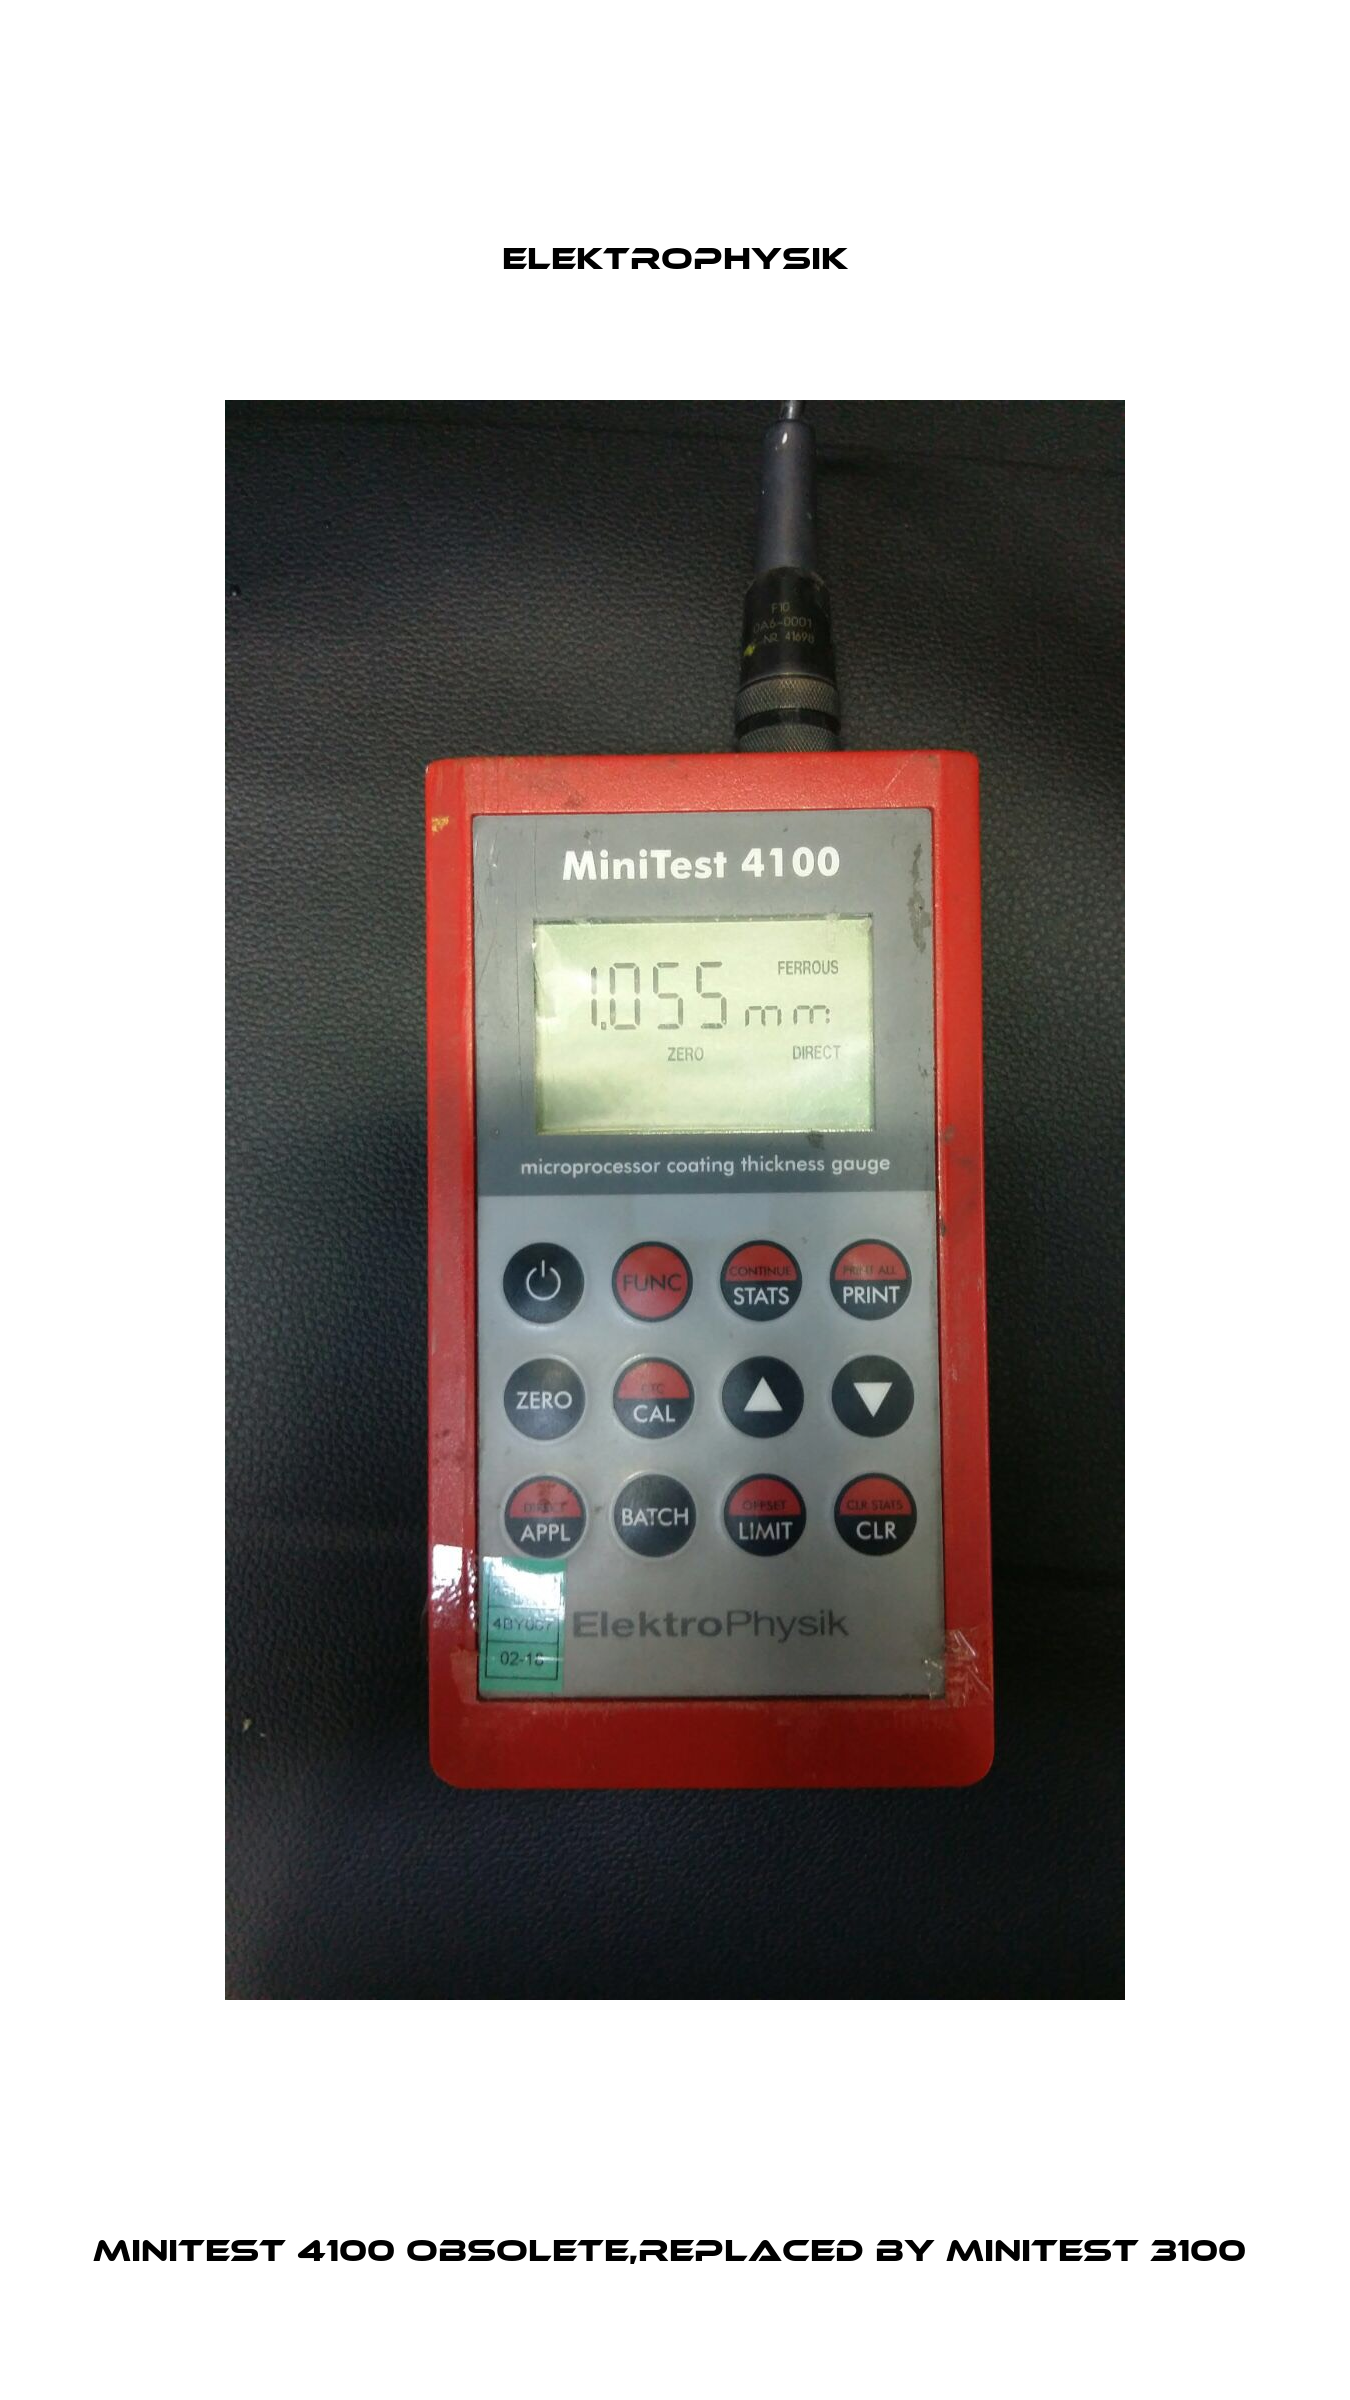 MiniTest 4100 obsolete,replaced by MiniTest 3100  ElektroPhysik